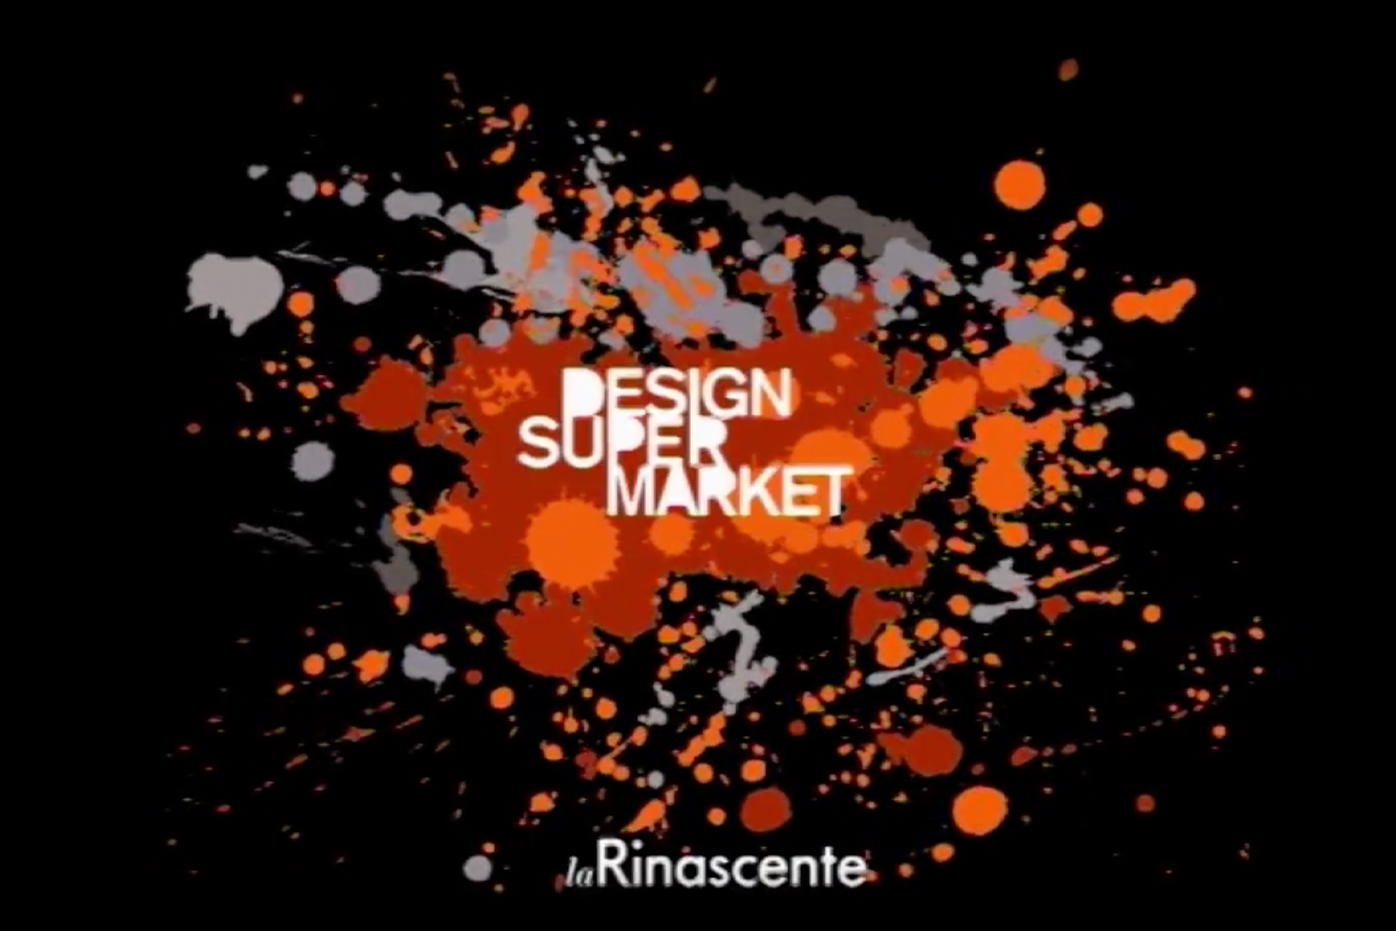 La Rinascente – Design Supermarket